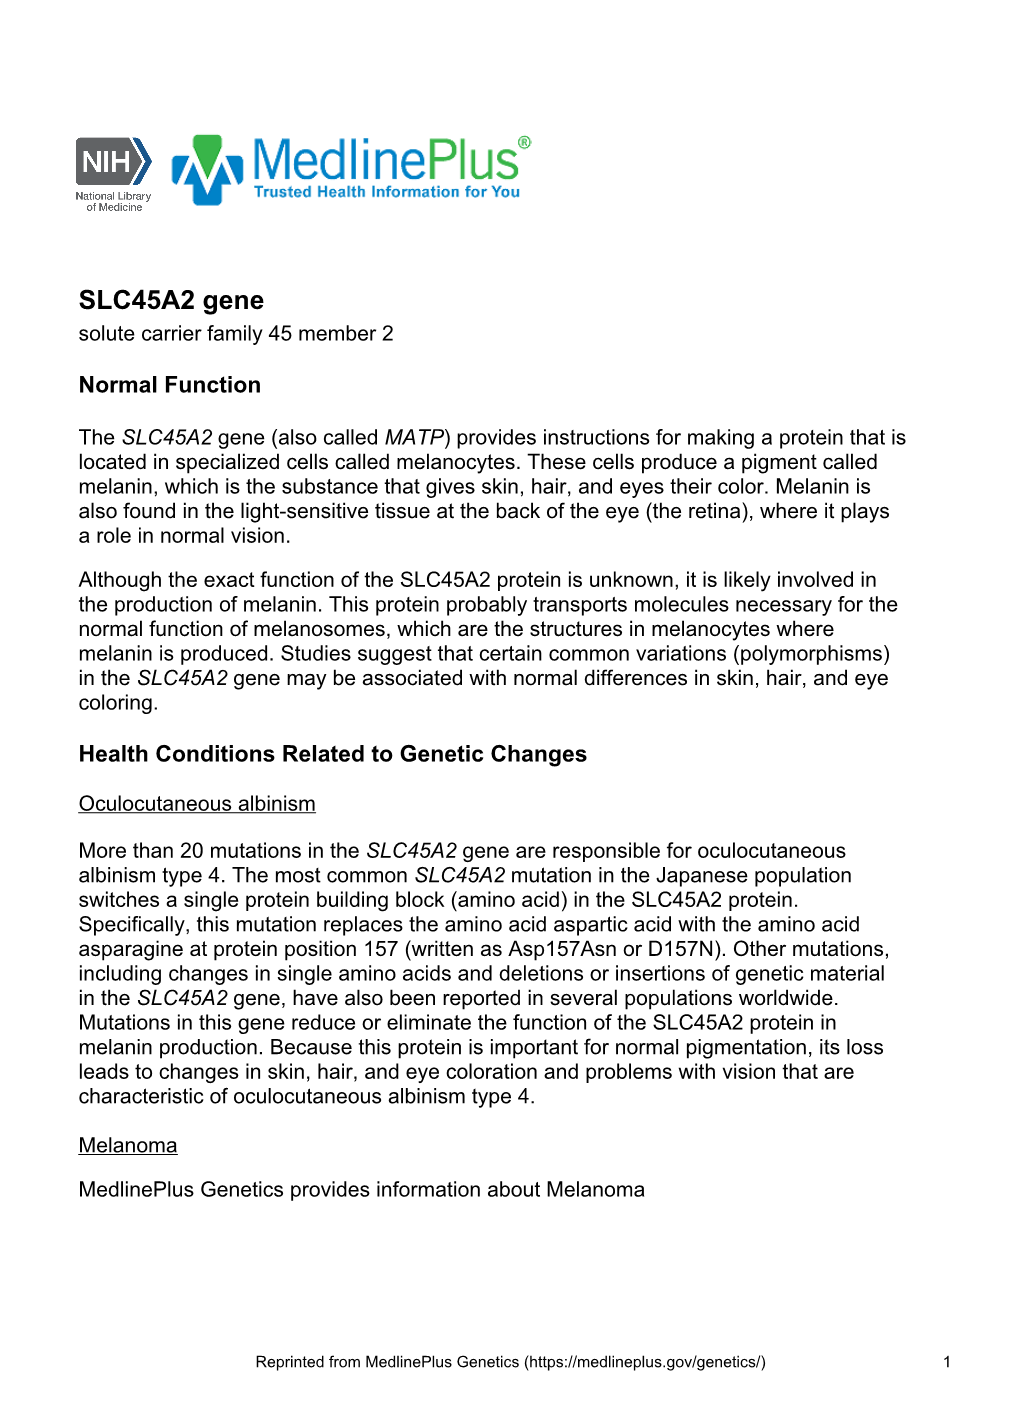 SLC45A2 Gene Solute Carrier Family 45 Member 2